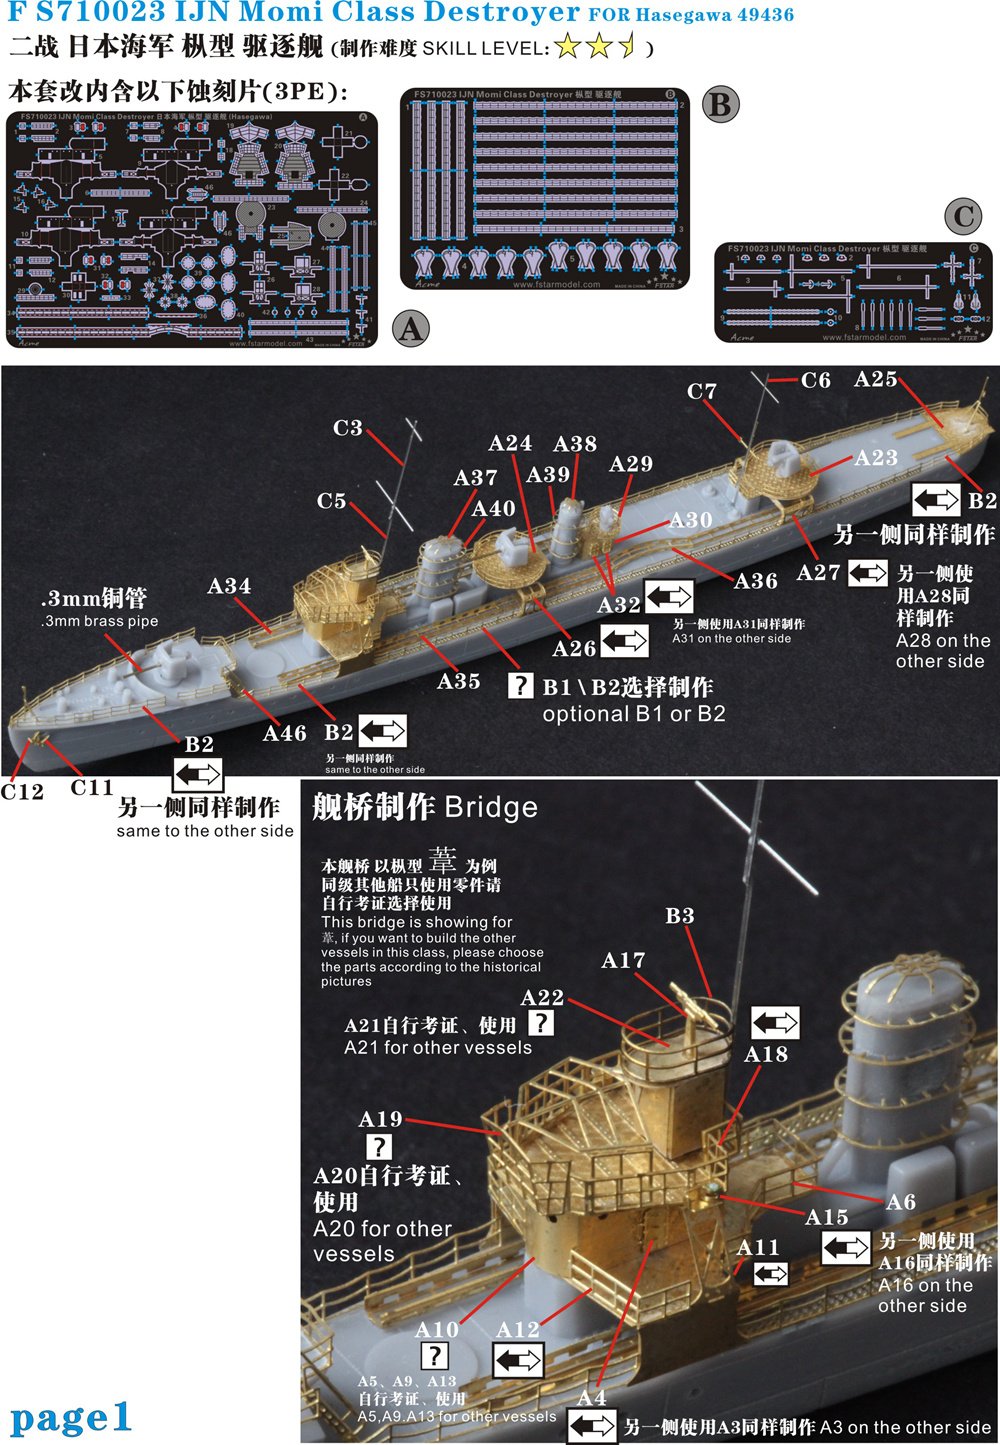 1/700 二战日本海军枞型驱逐舰升级改造套件(配长谷川49436)